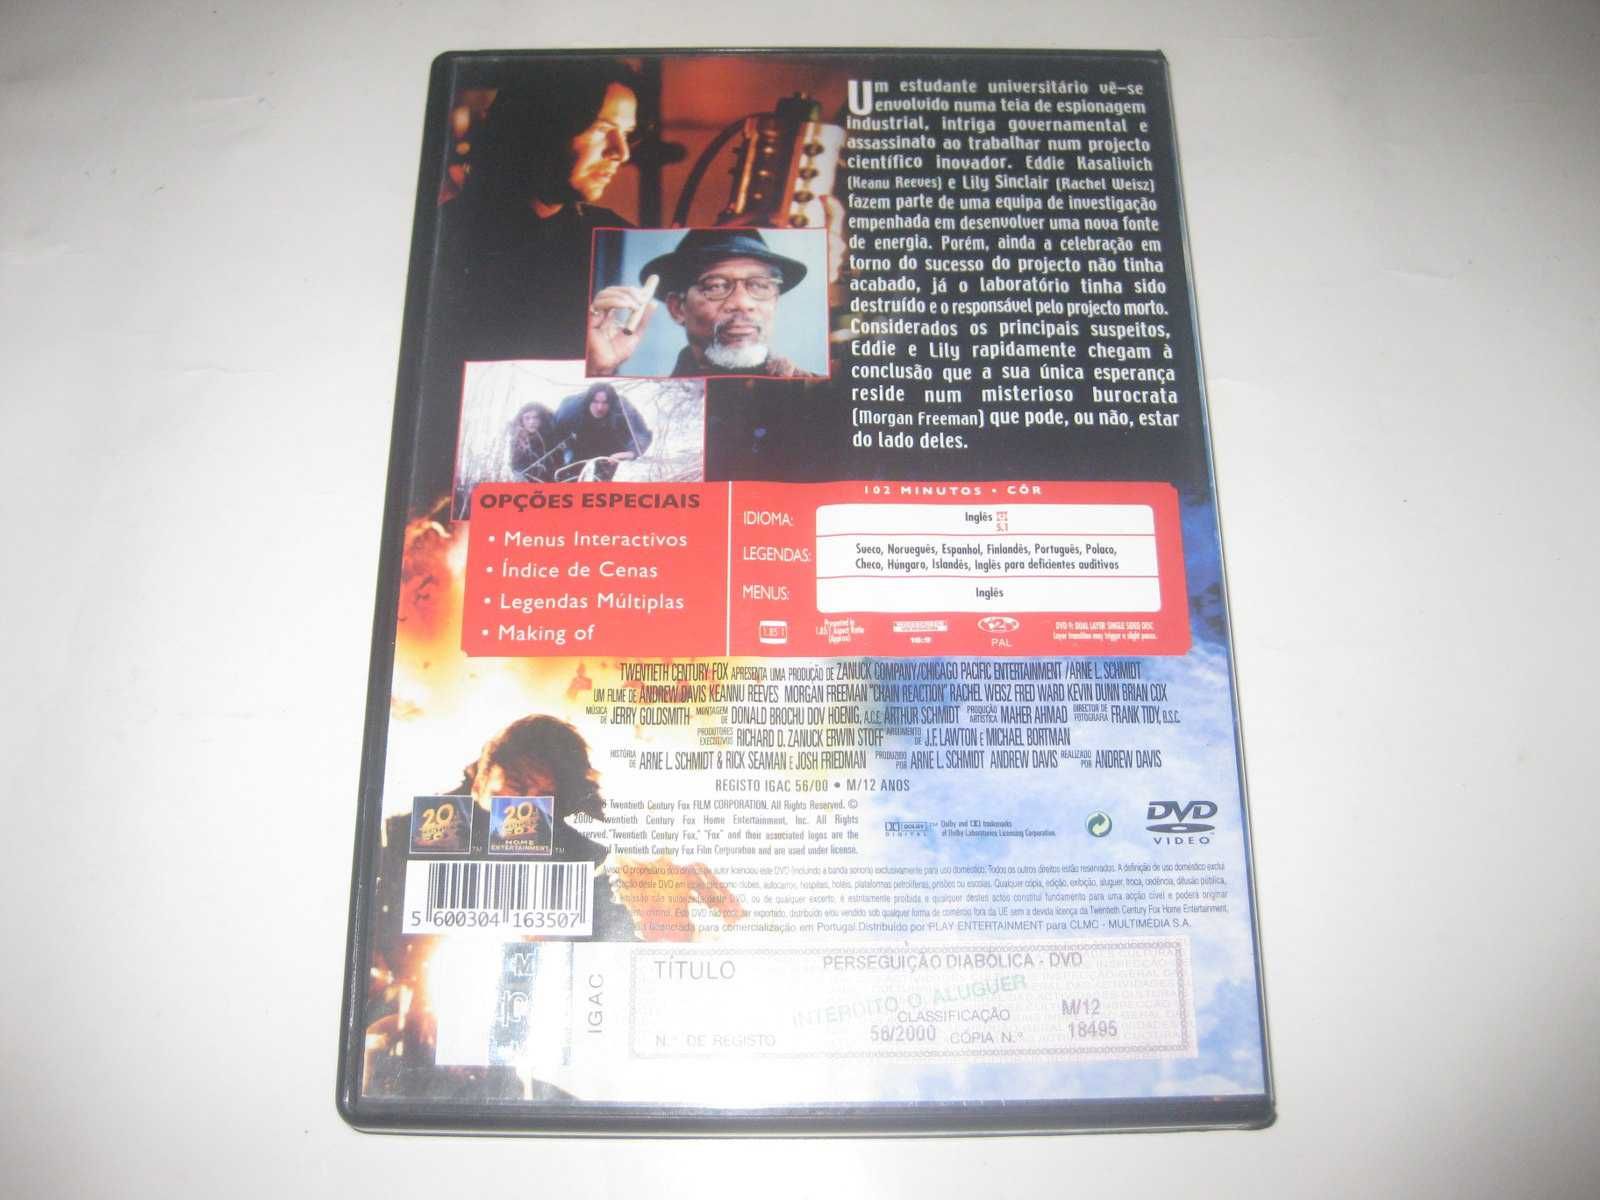 DVD "Perseguição Diabólica" com Keanu Reeves